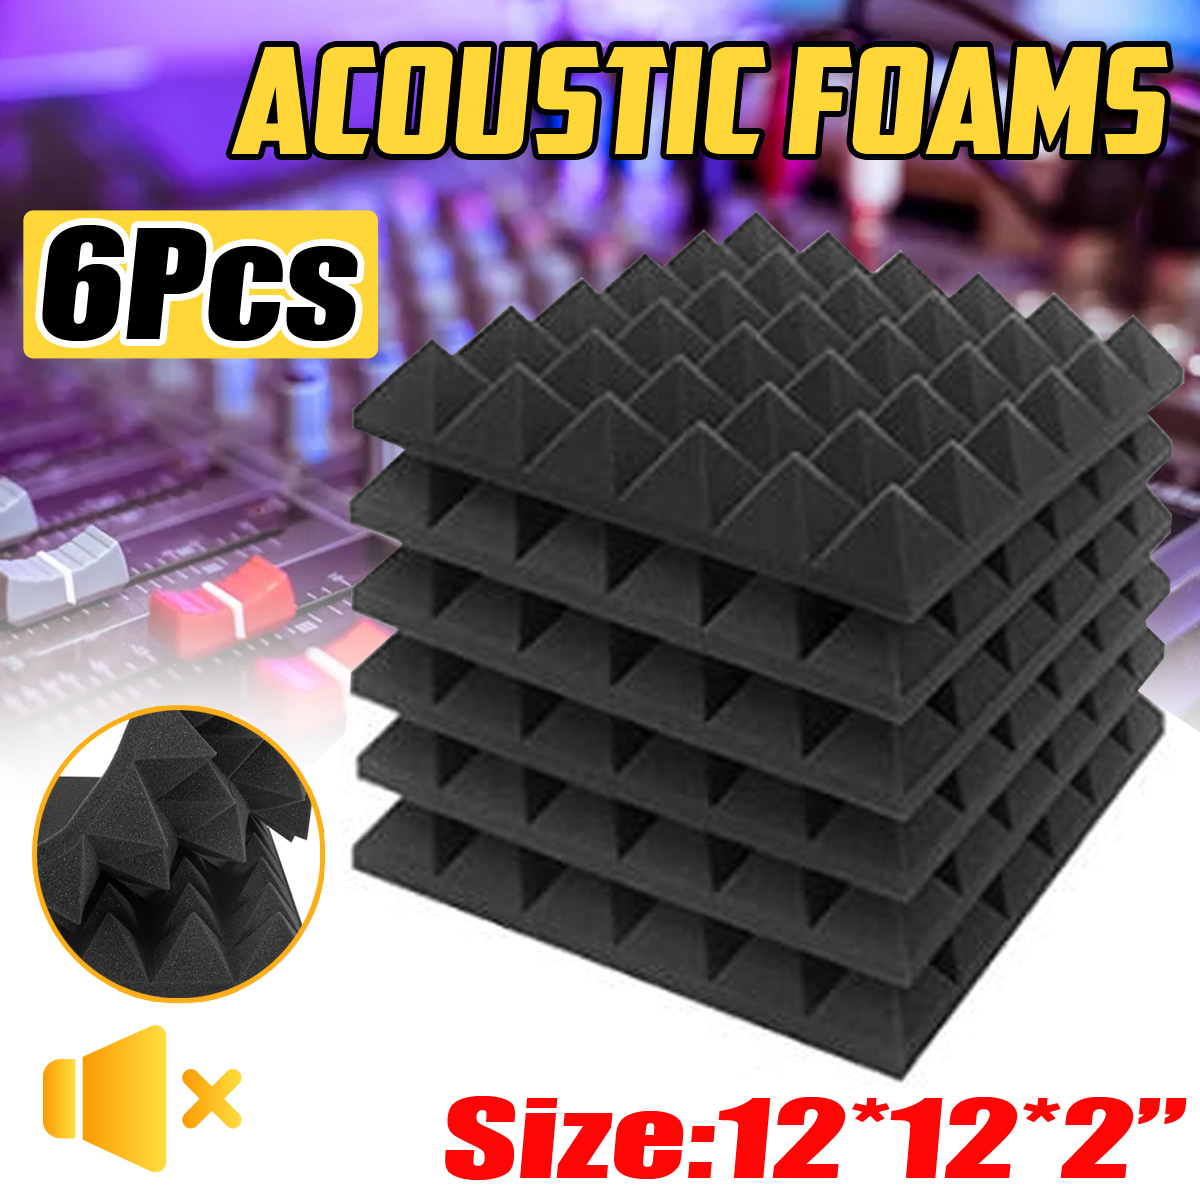 6Pcs-Acoustic-Foam-Studio-Soundproofing-Foam-Wedges-Wall-Tiles-12-x-12-x-2inch-1749893-2